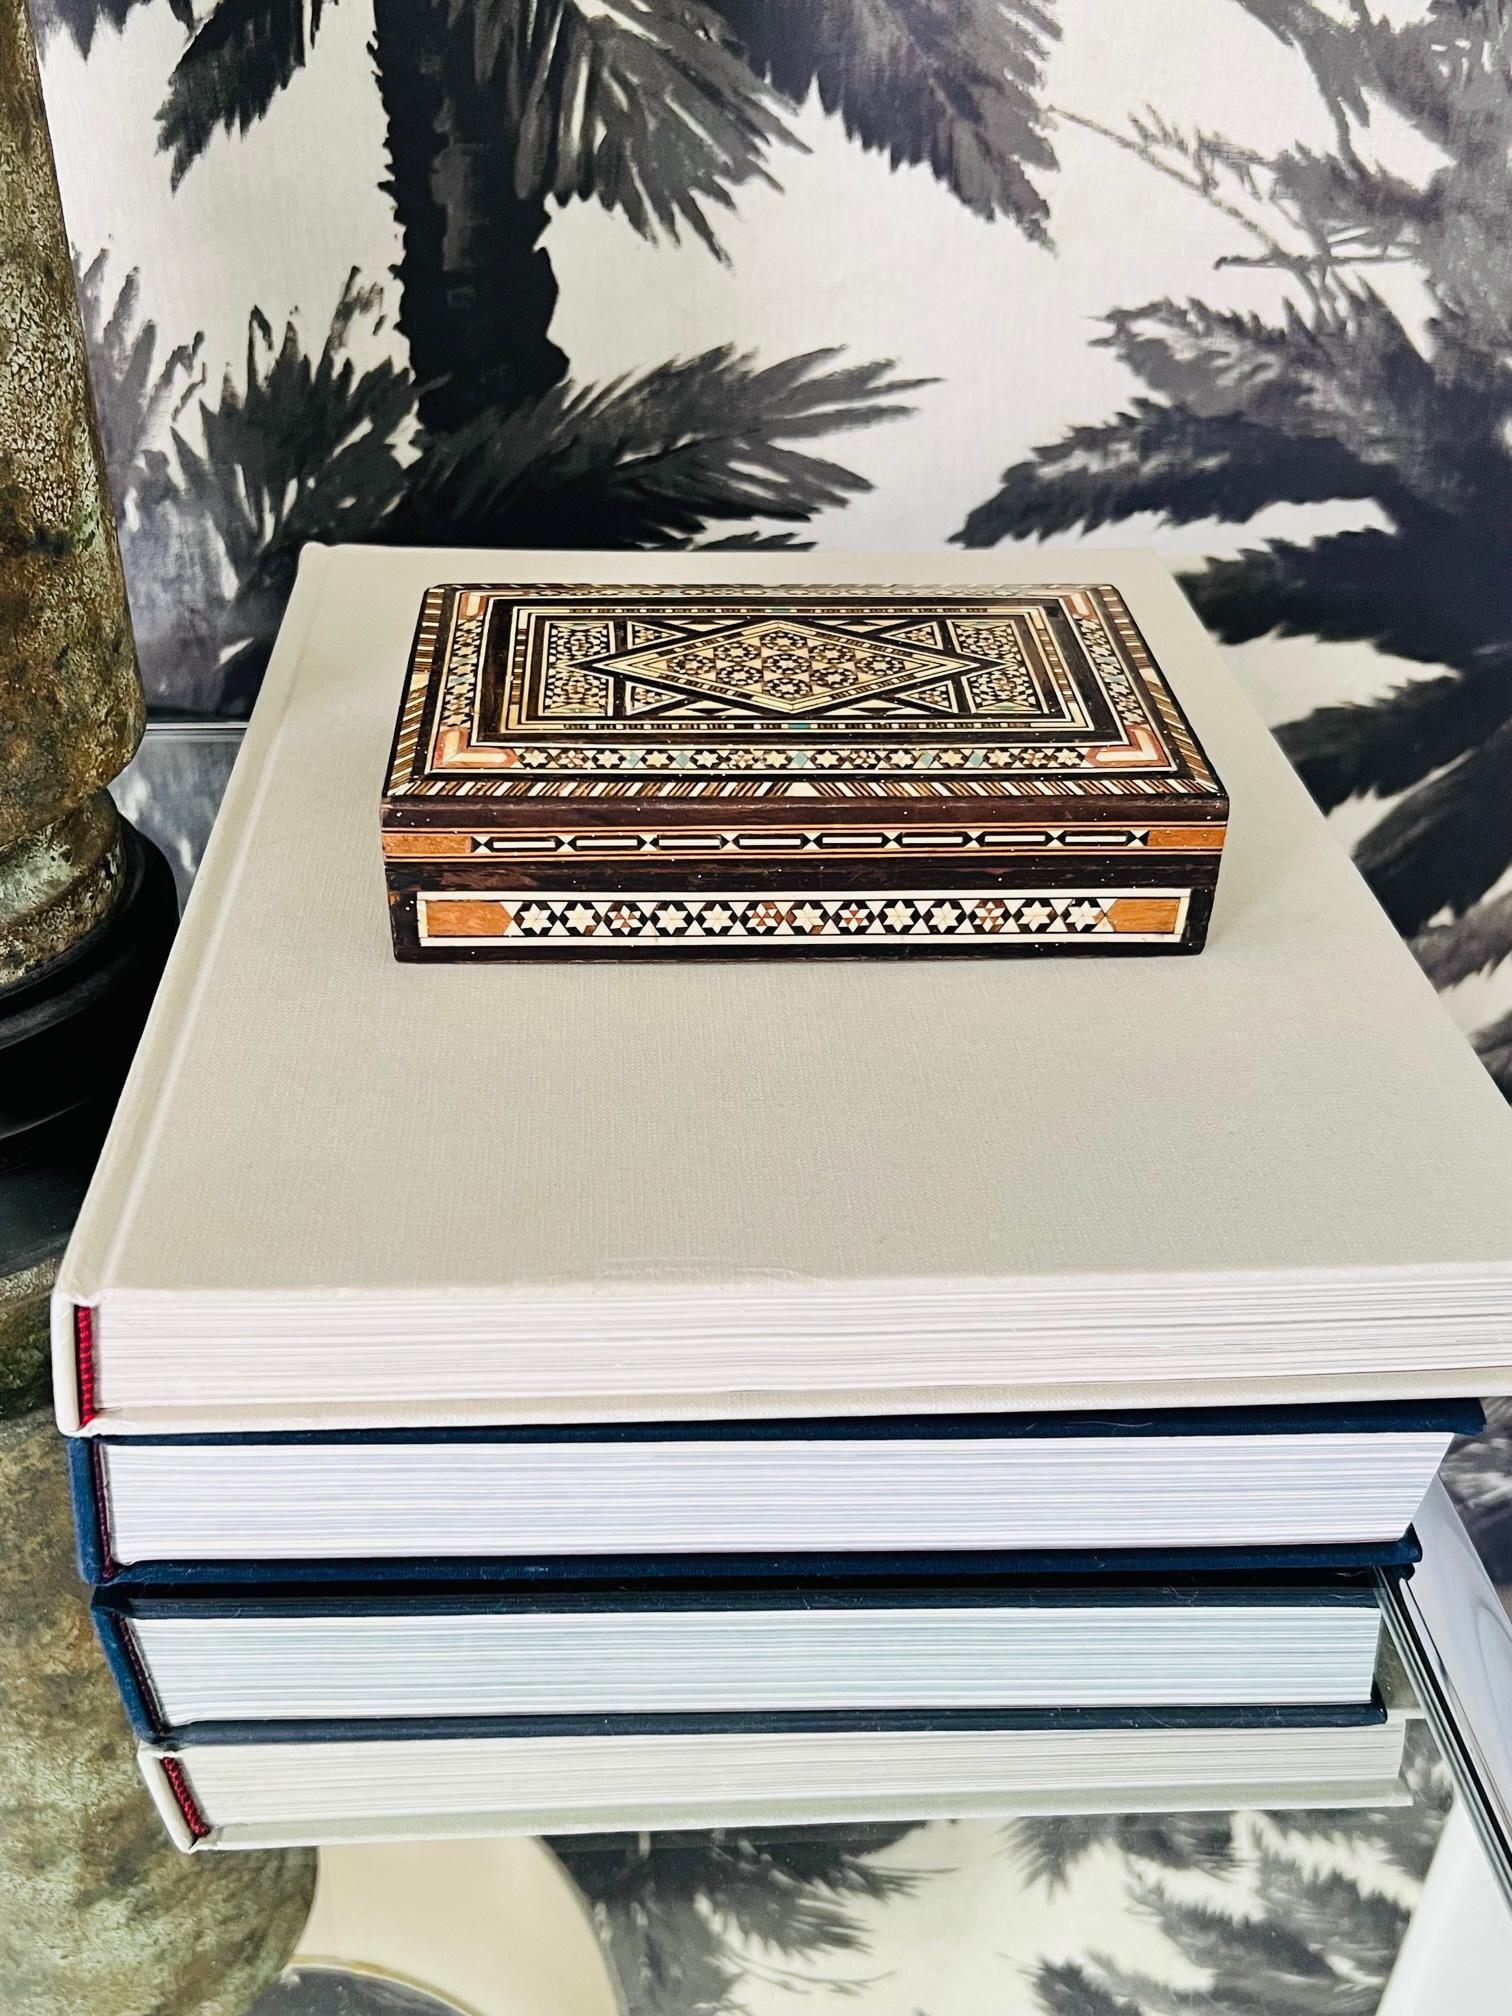 Exquisite, handgefertigte Khatam-Holzschatulle mit Mikro-Mosaik-Einlegearbeit, einer altpersischen Technik der Einlegearbeit.  Kästchen im maurischen Stil mit geometrischen Intarsien aus Holz und Knochen. Kunsthandwerkliche Verarbeitung mit